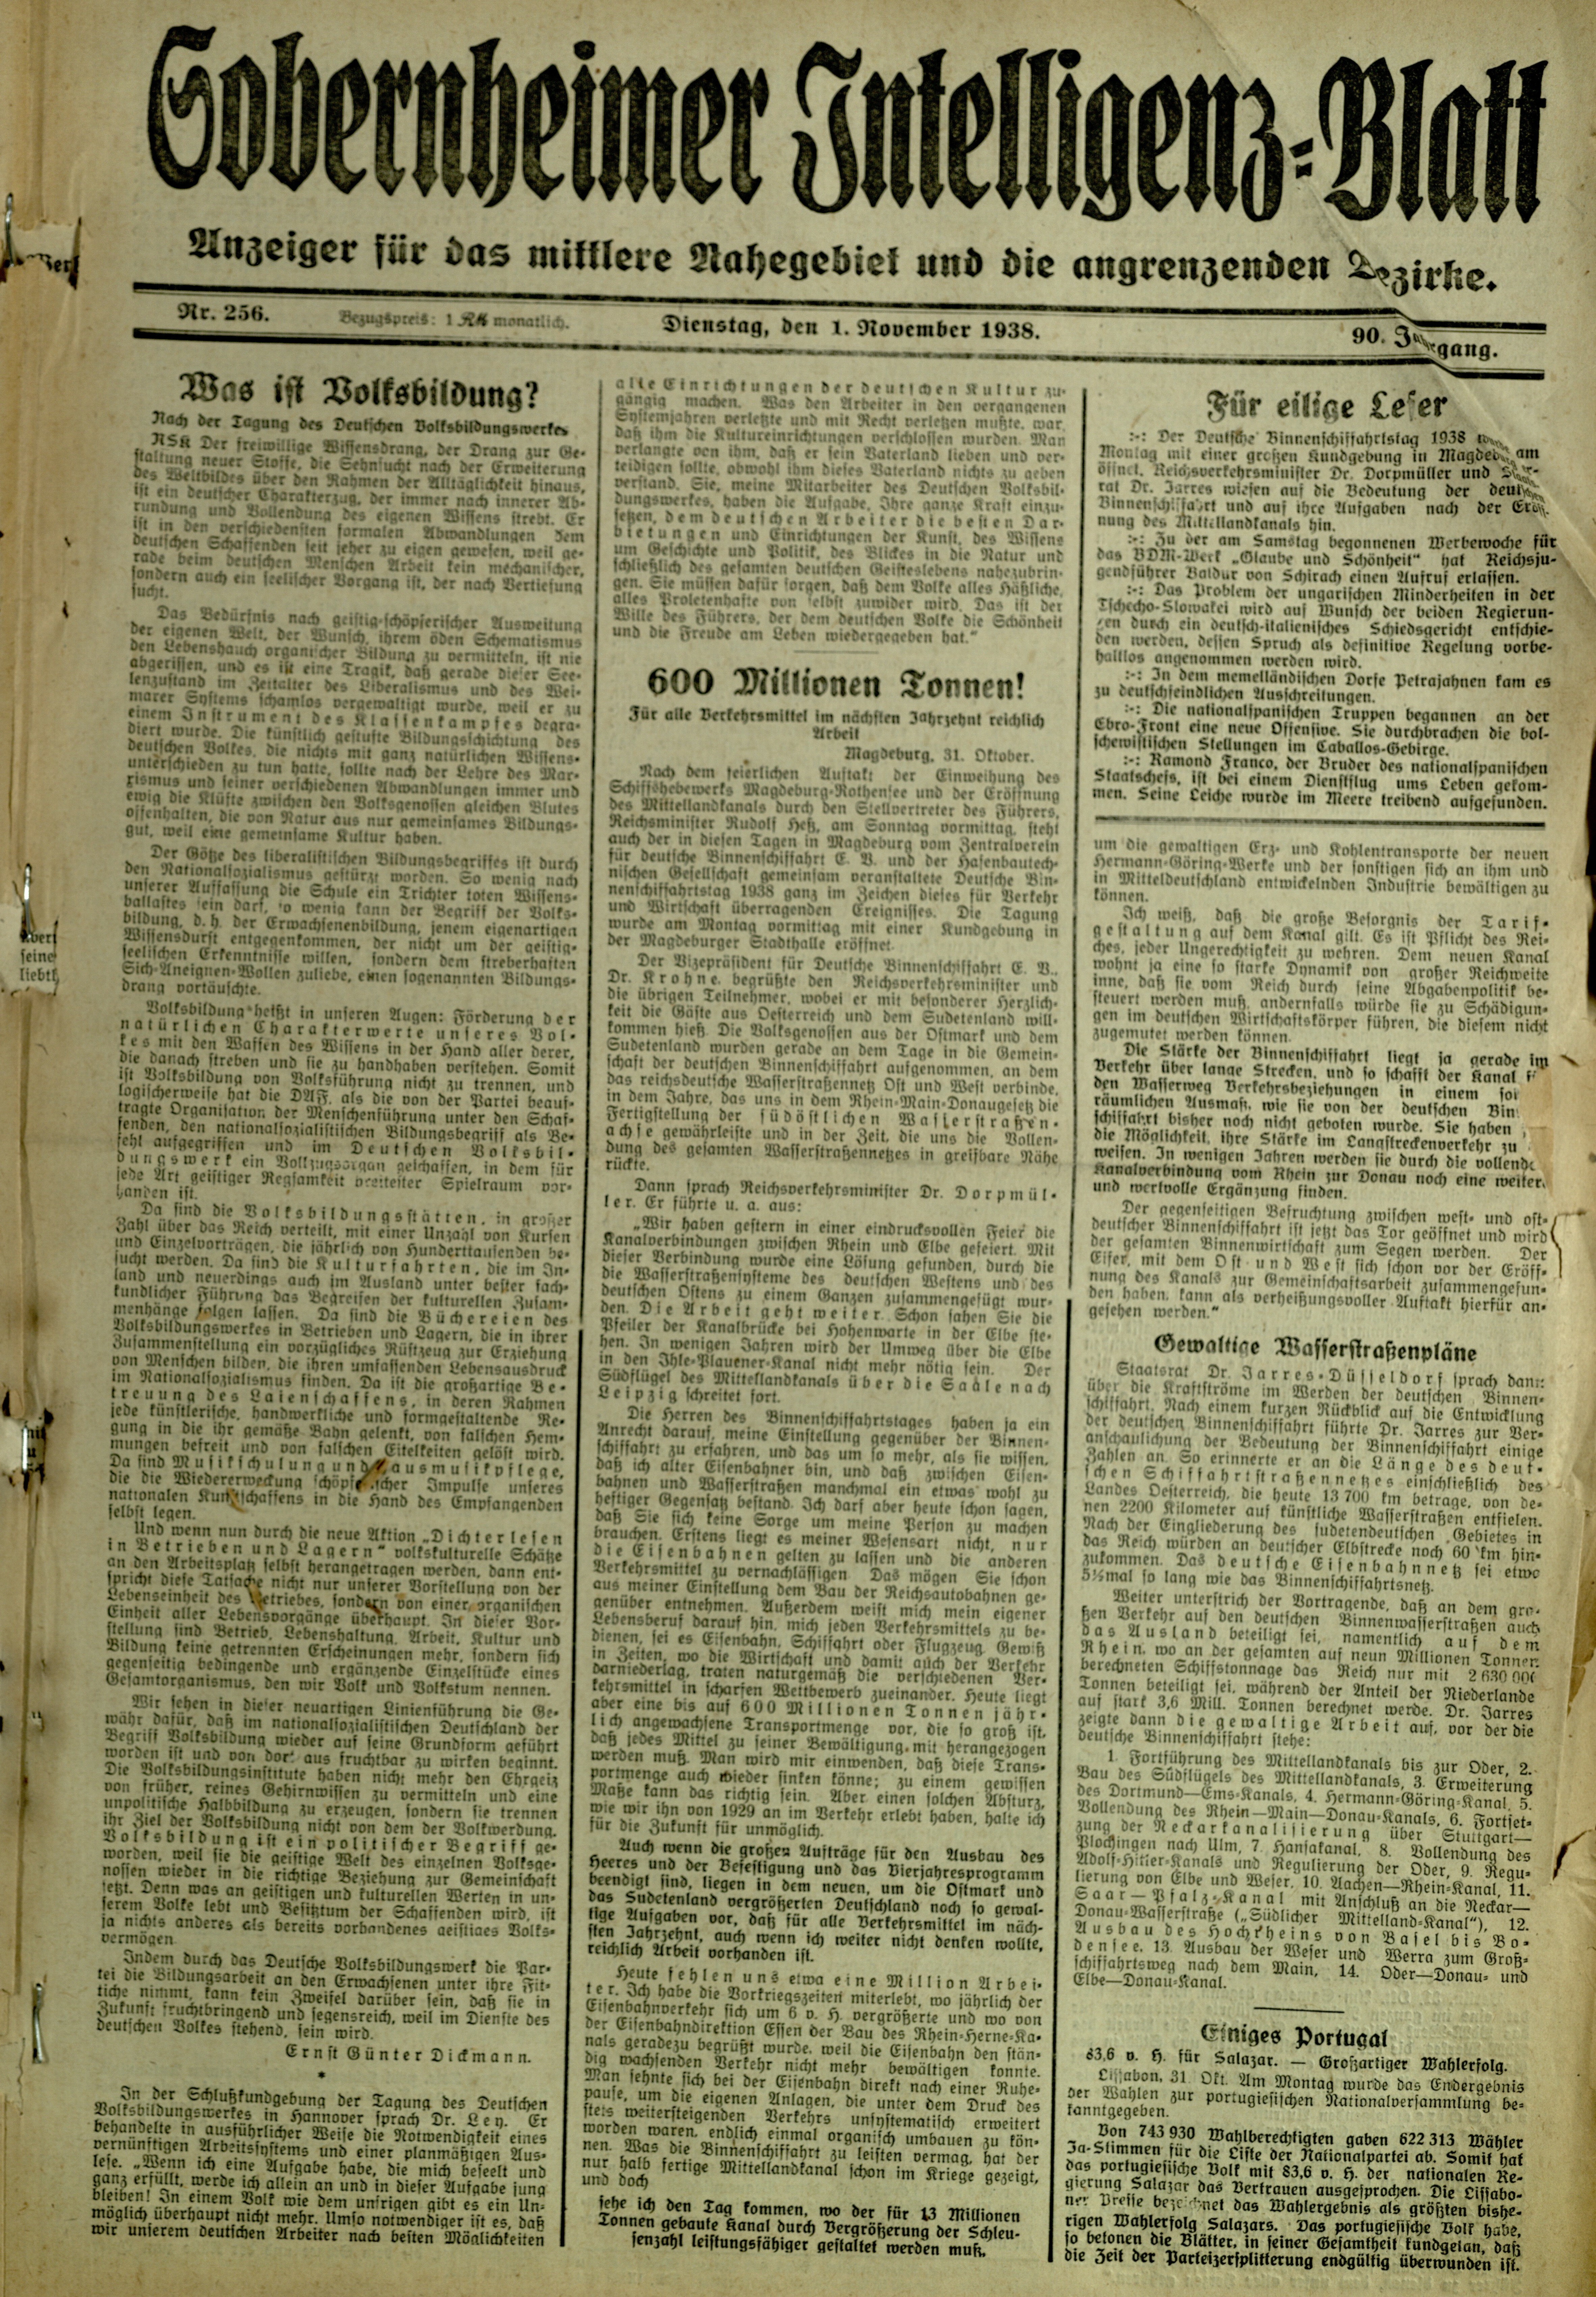 Zeitung: Sobernheimer Intelligenzblatt; November 1938, Jg. 88 Nr. 256 (Heimatmuseum Bad Sobernheim CC BY-NC-SA)